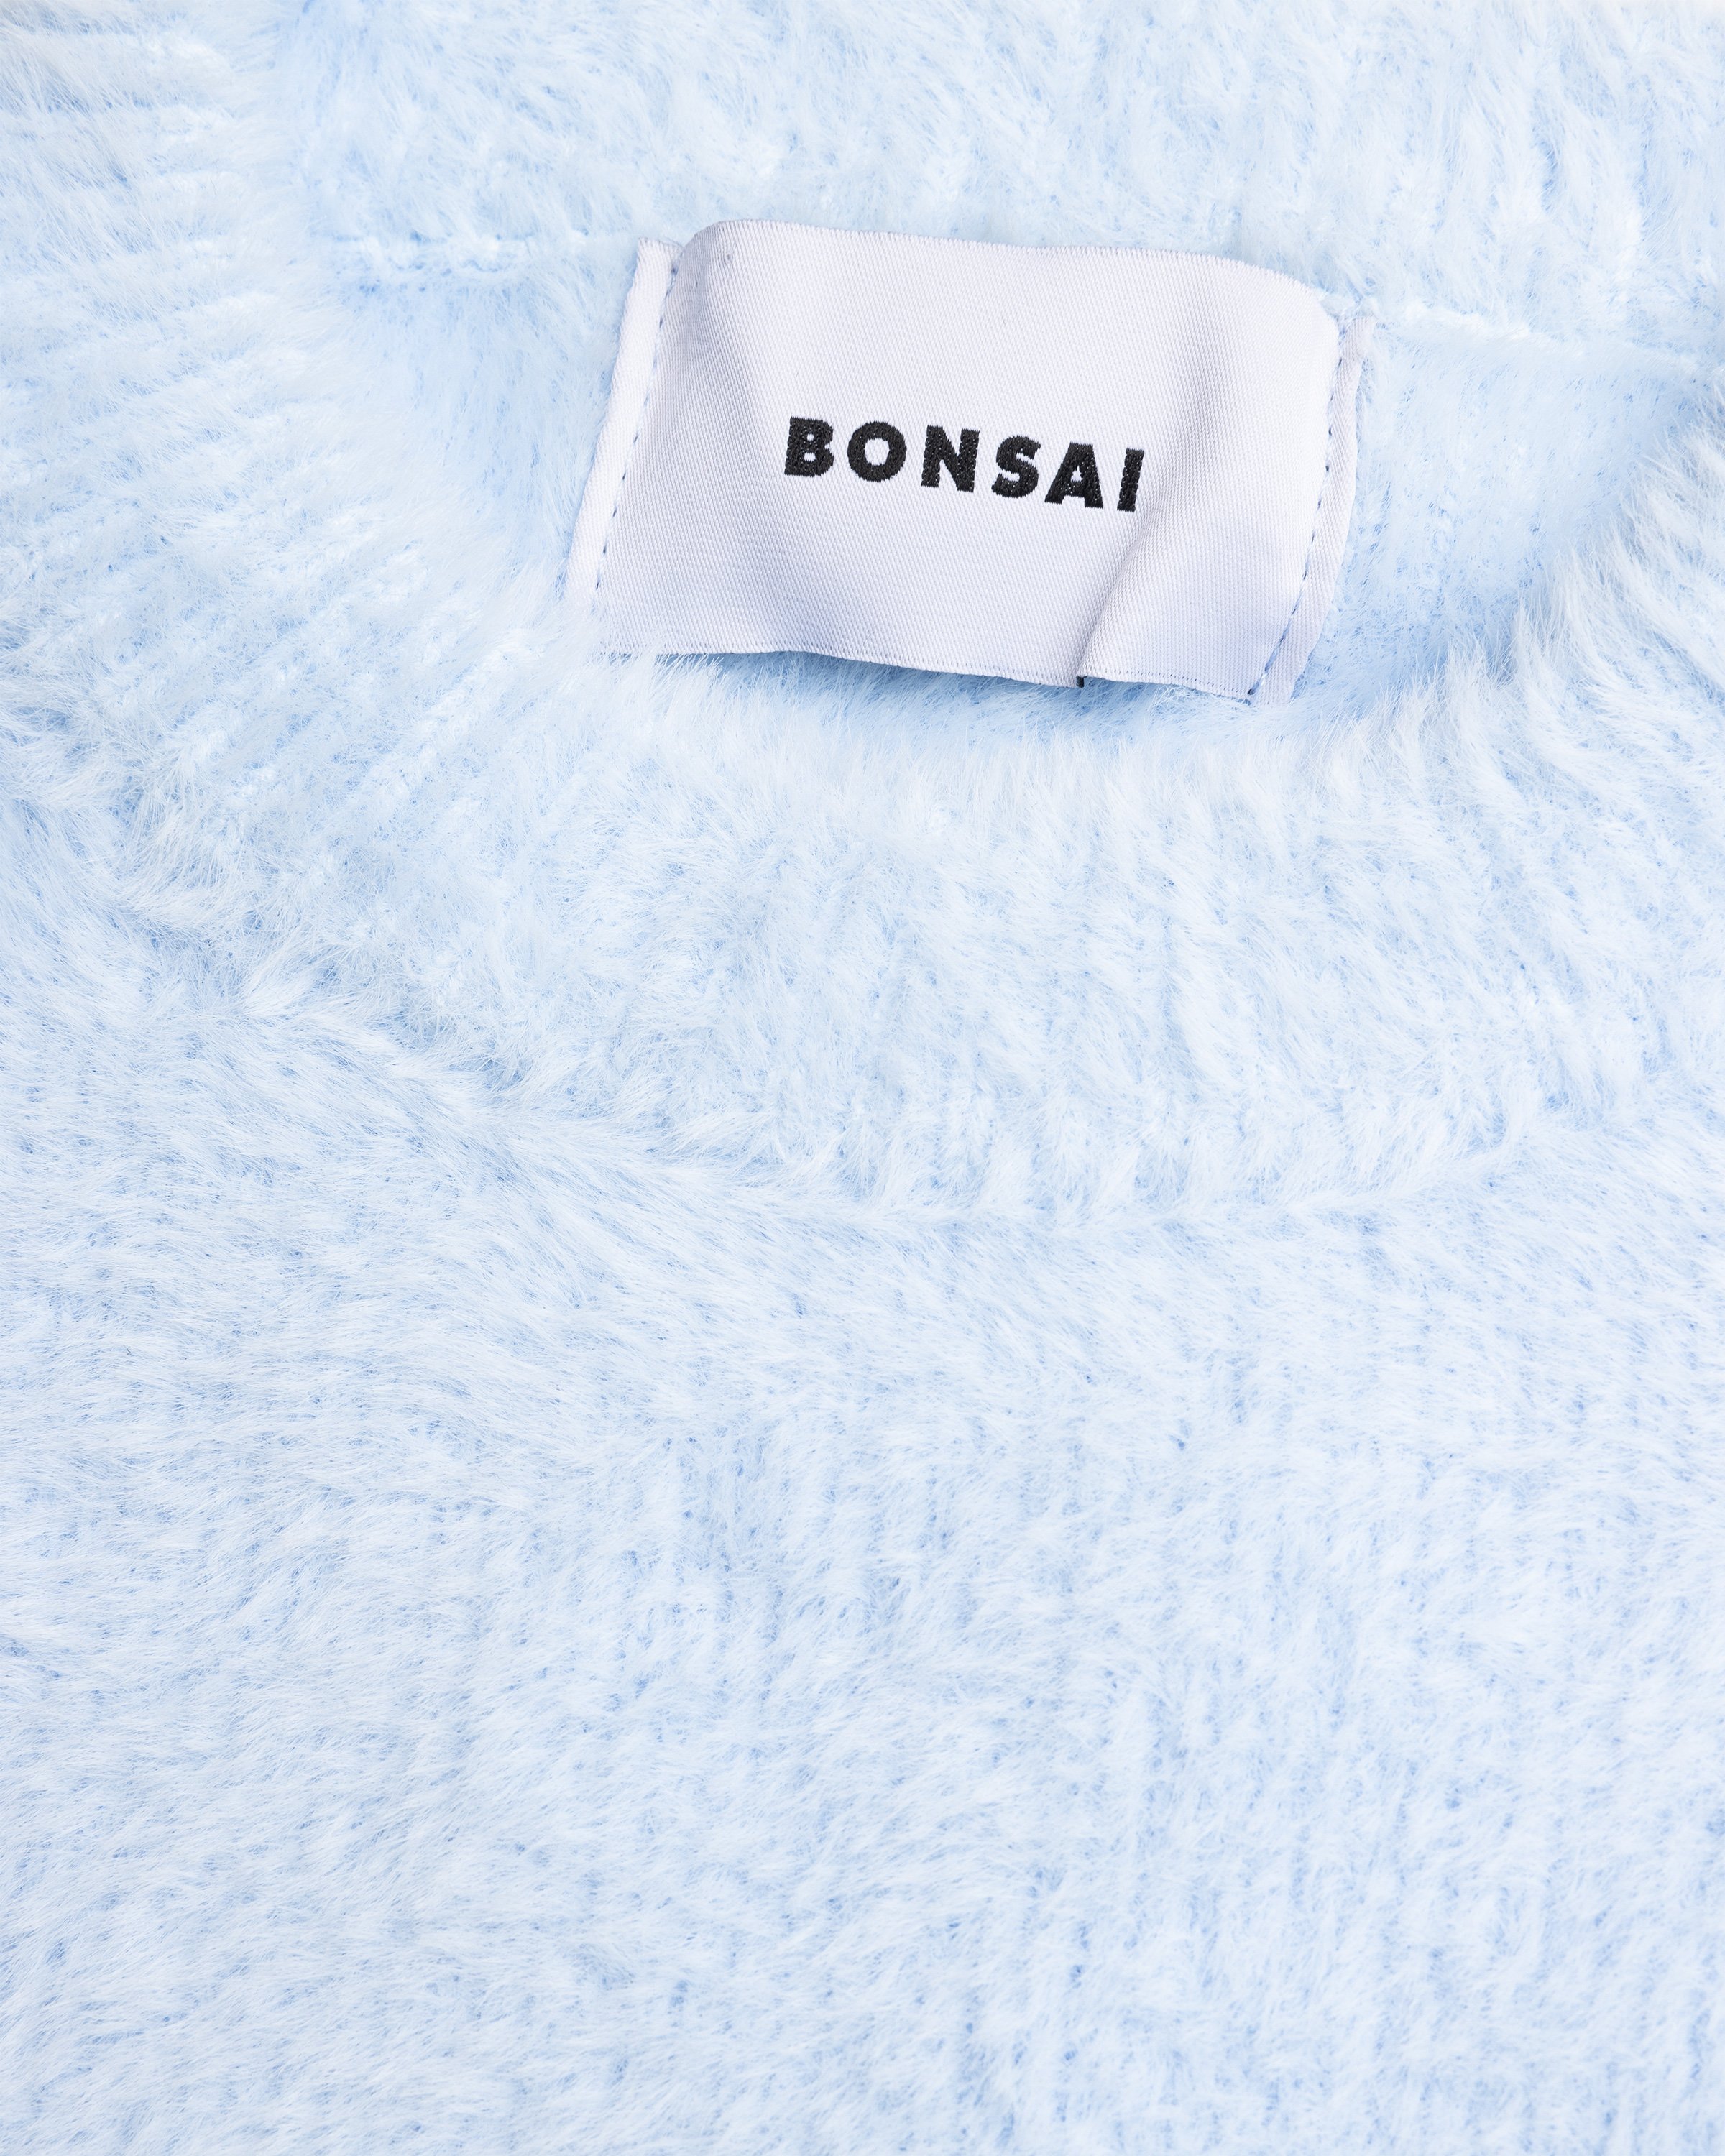 Bonsai - Degrade Knit Crewneck Sweater Sunset - Clothing - Orange - Image 7